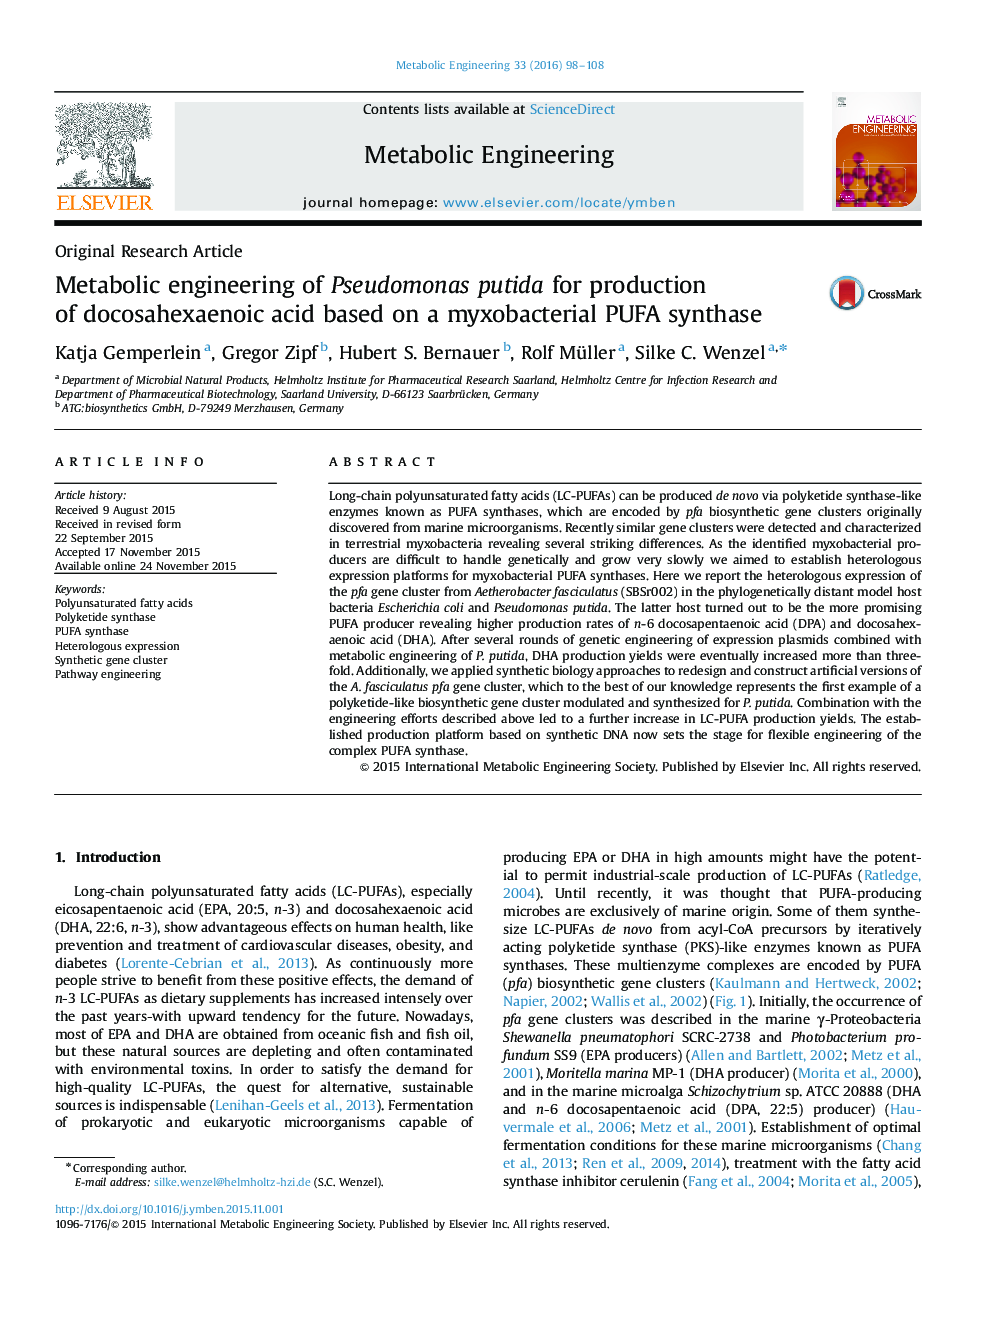 Metabolic engineering of Pseudomonas putida for production of docosahexaenoic acid based on a myxobacterial PUFA synthase